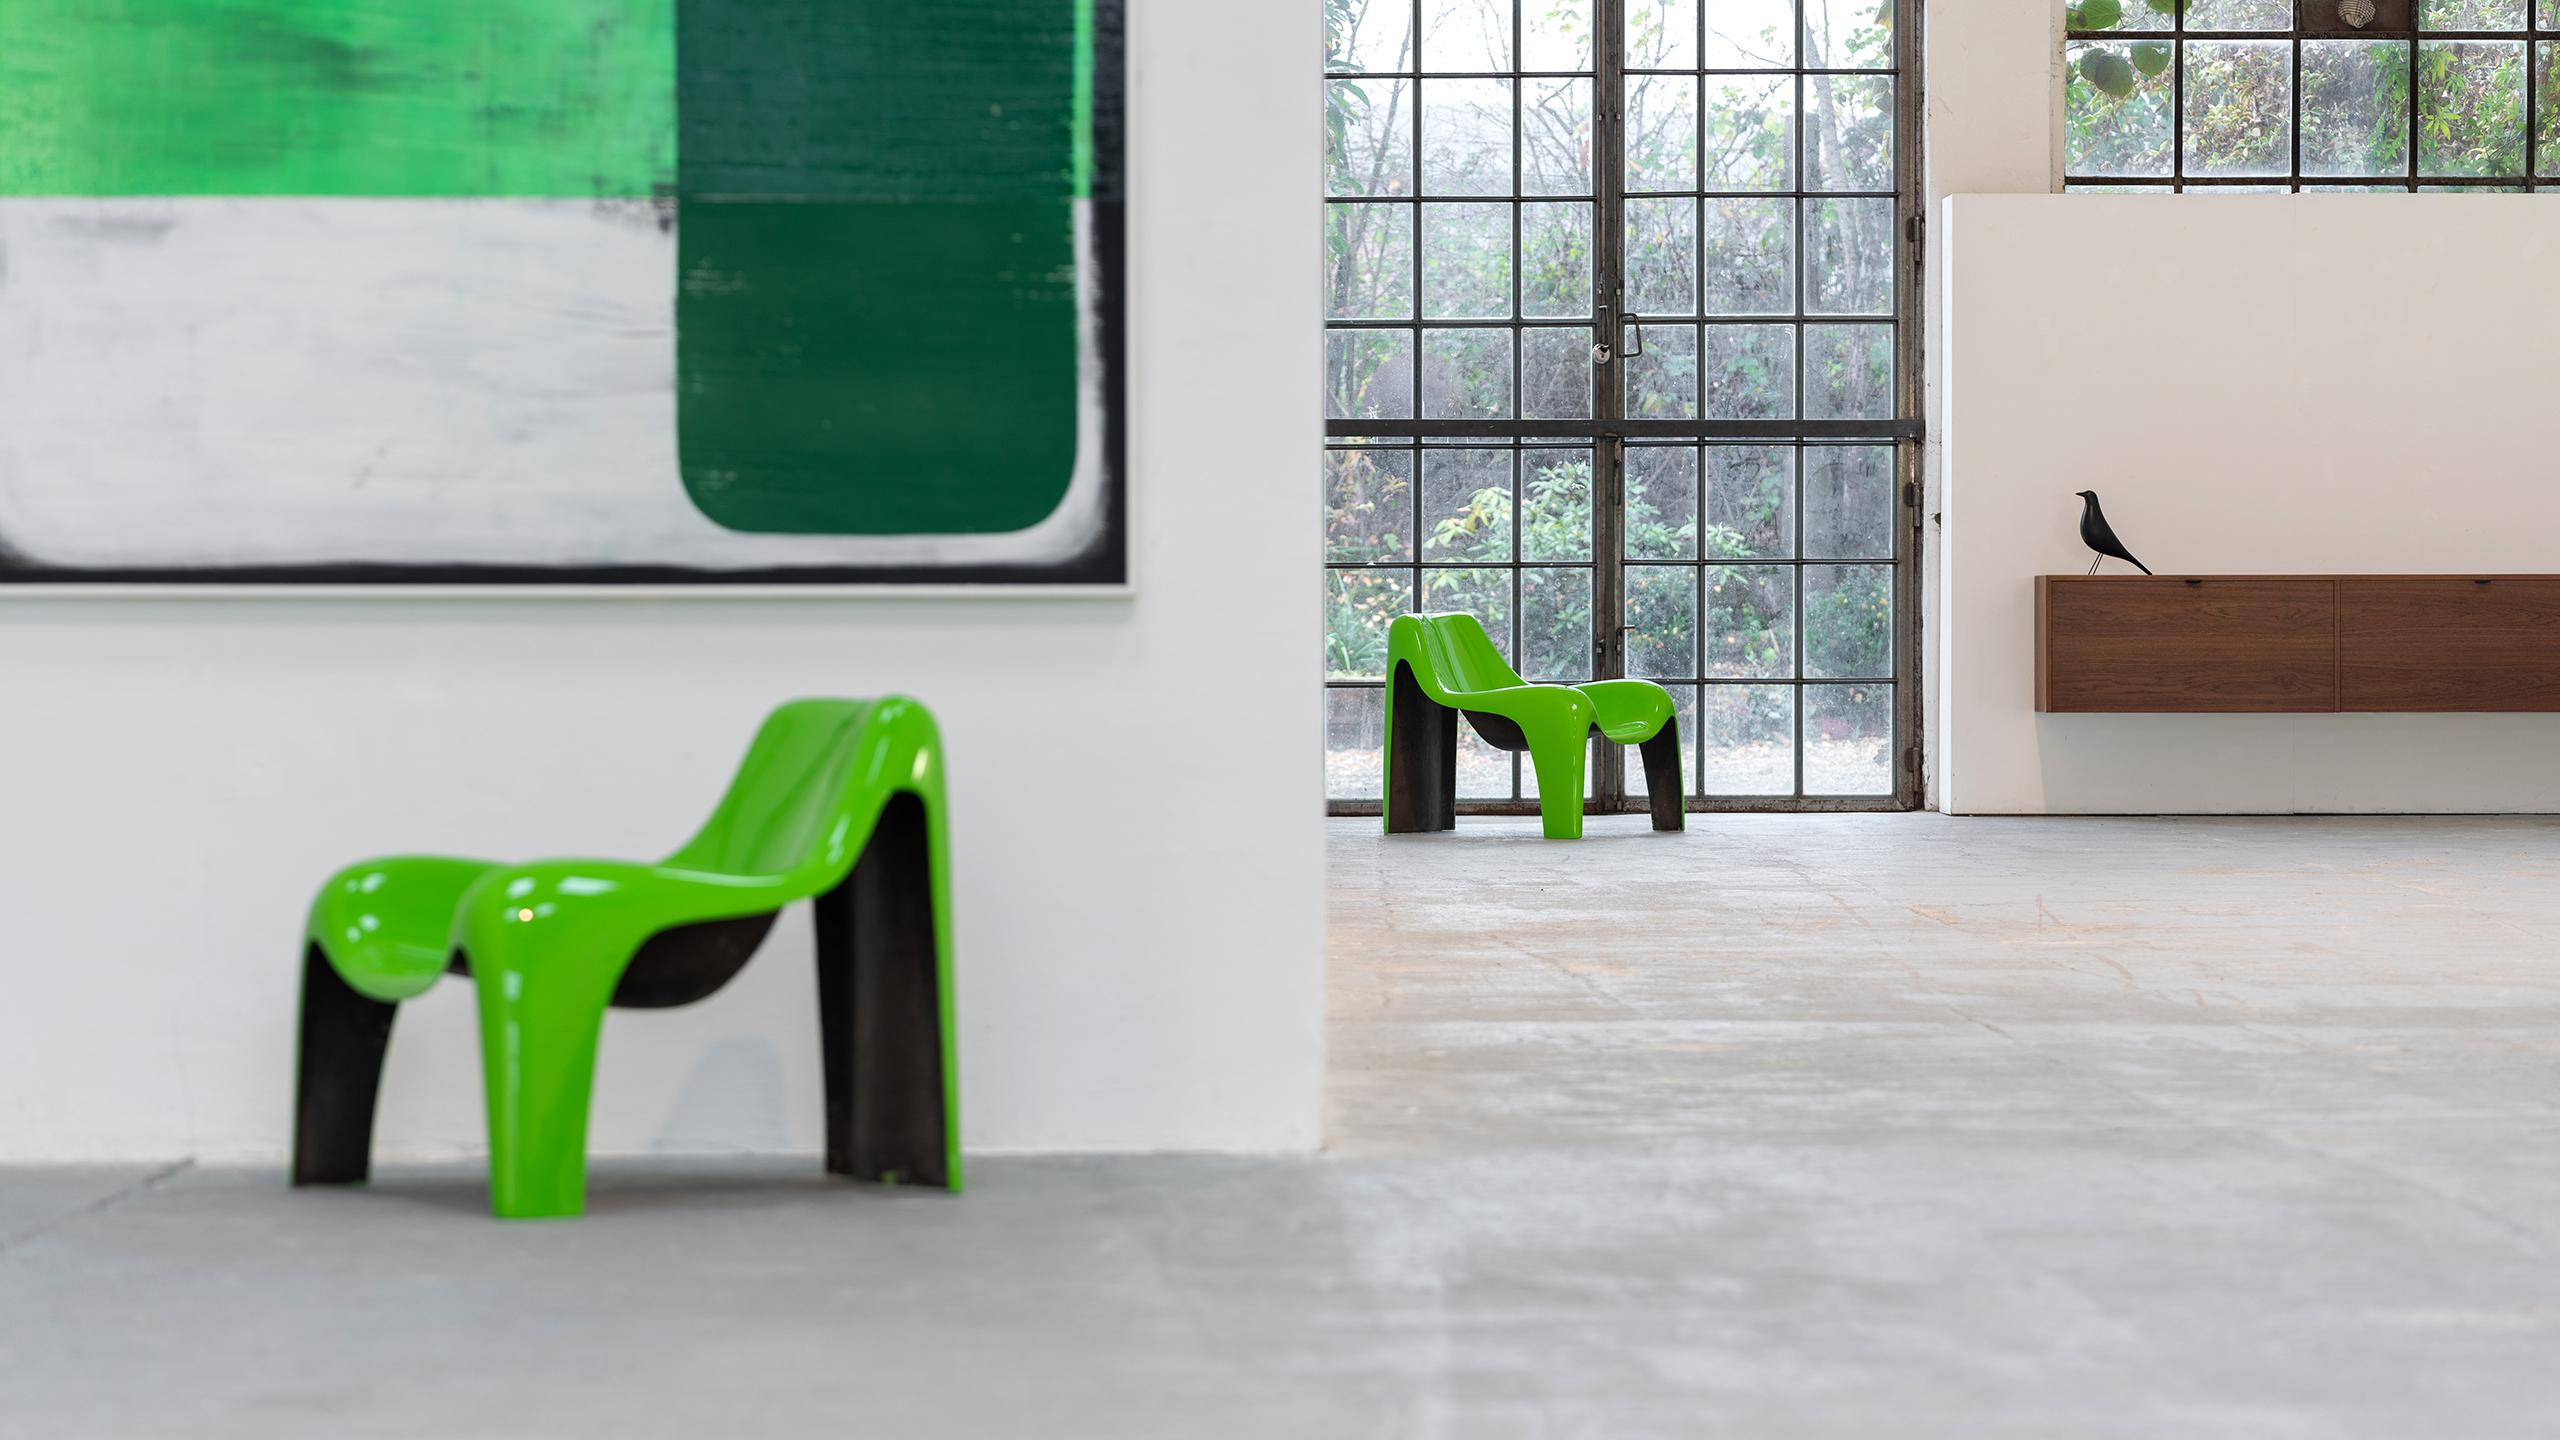 Wir bieten 1 äußerst seltenen Fiberglas-Sessel von Luigi Colani an. 
(der zweite Stuhl ist bereits verkauft)

ca. 1968, hergestellt für Heinz Essmann, Deutschland.
Der Stuhl wurde von unserem Lackiermeisterbetrieb im originalen glänzenden Grün auf